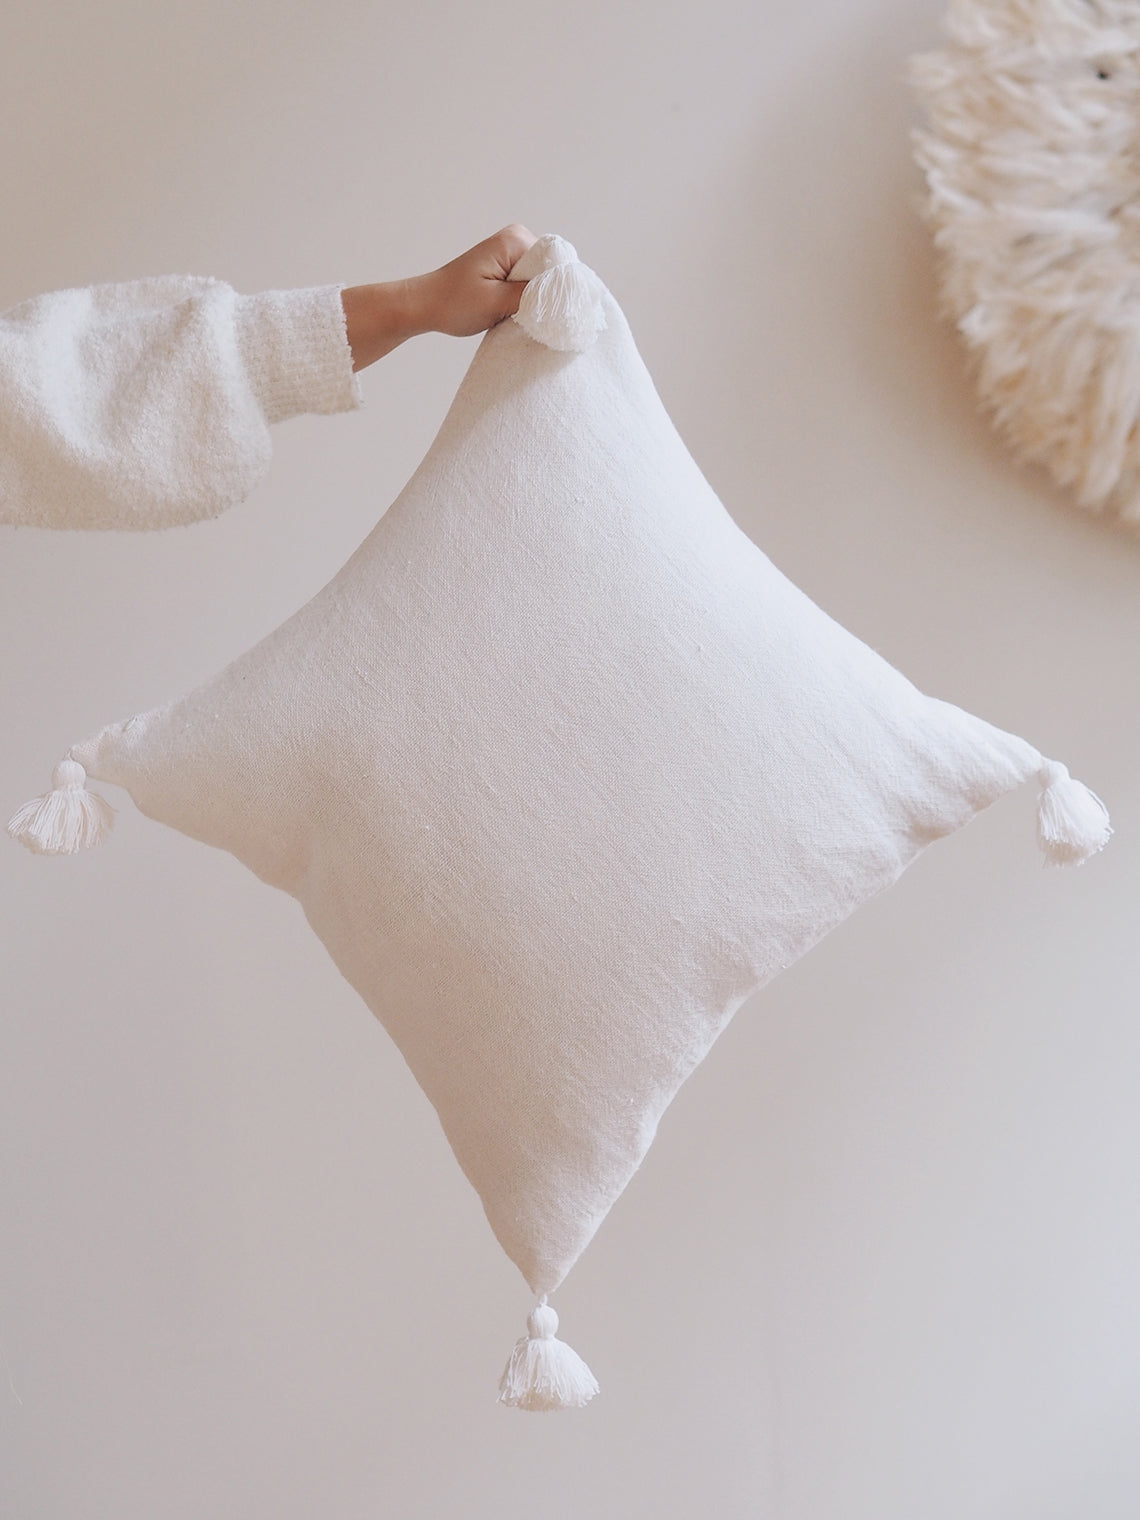 Montauk White Pillow | 20x20